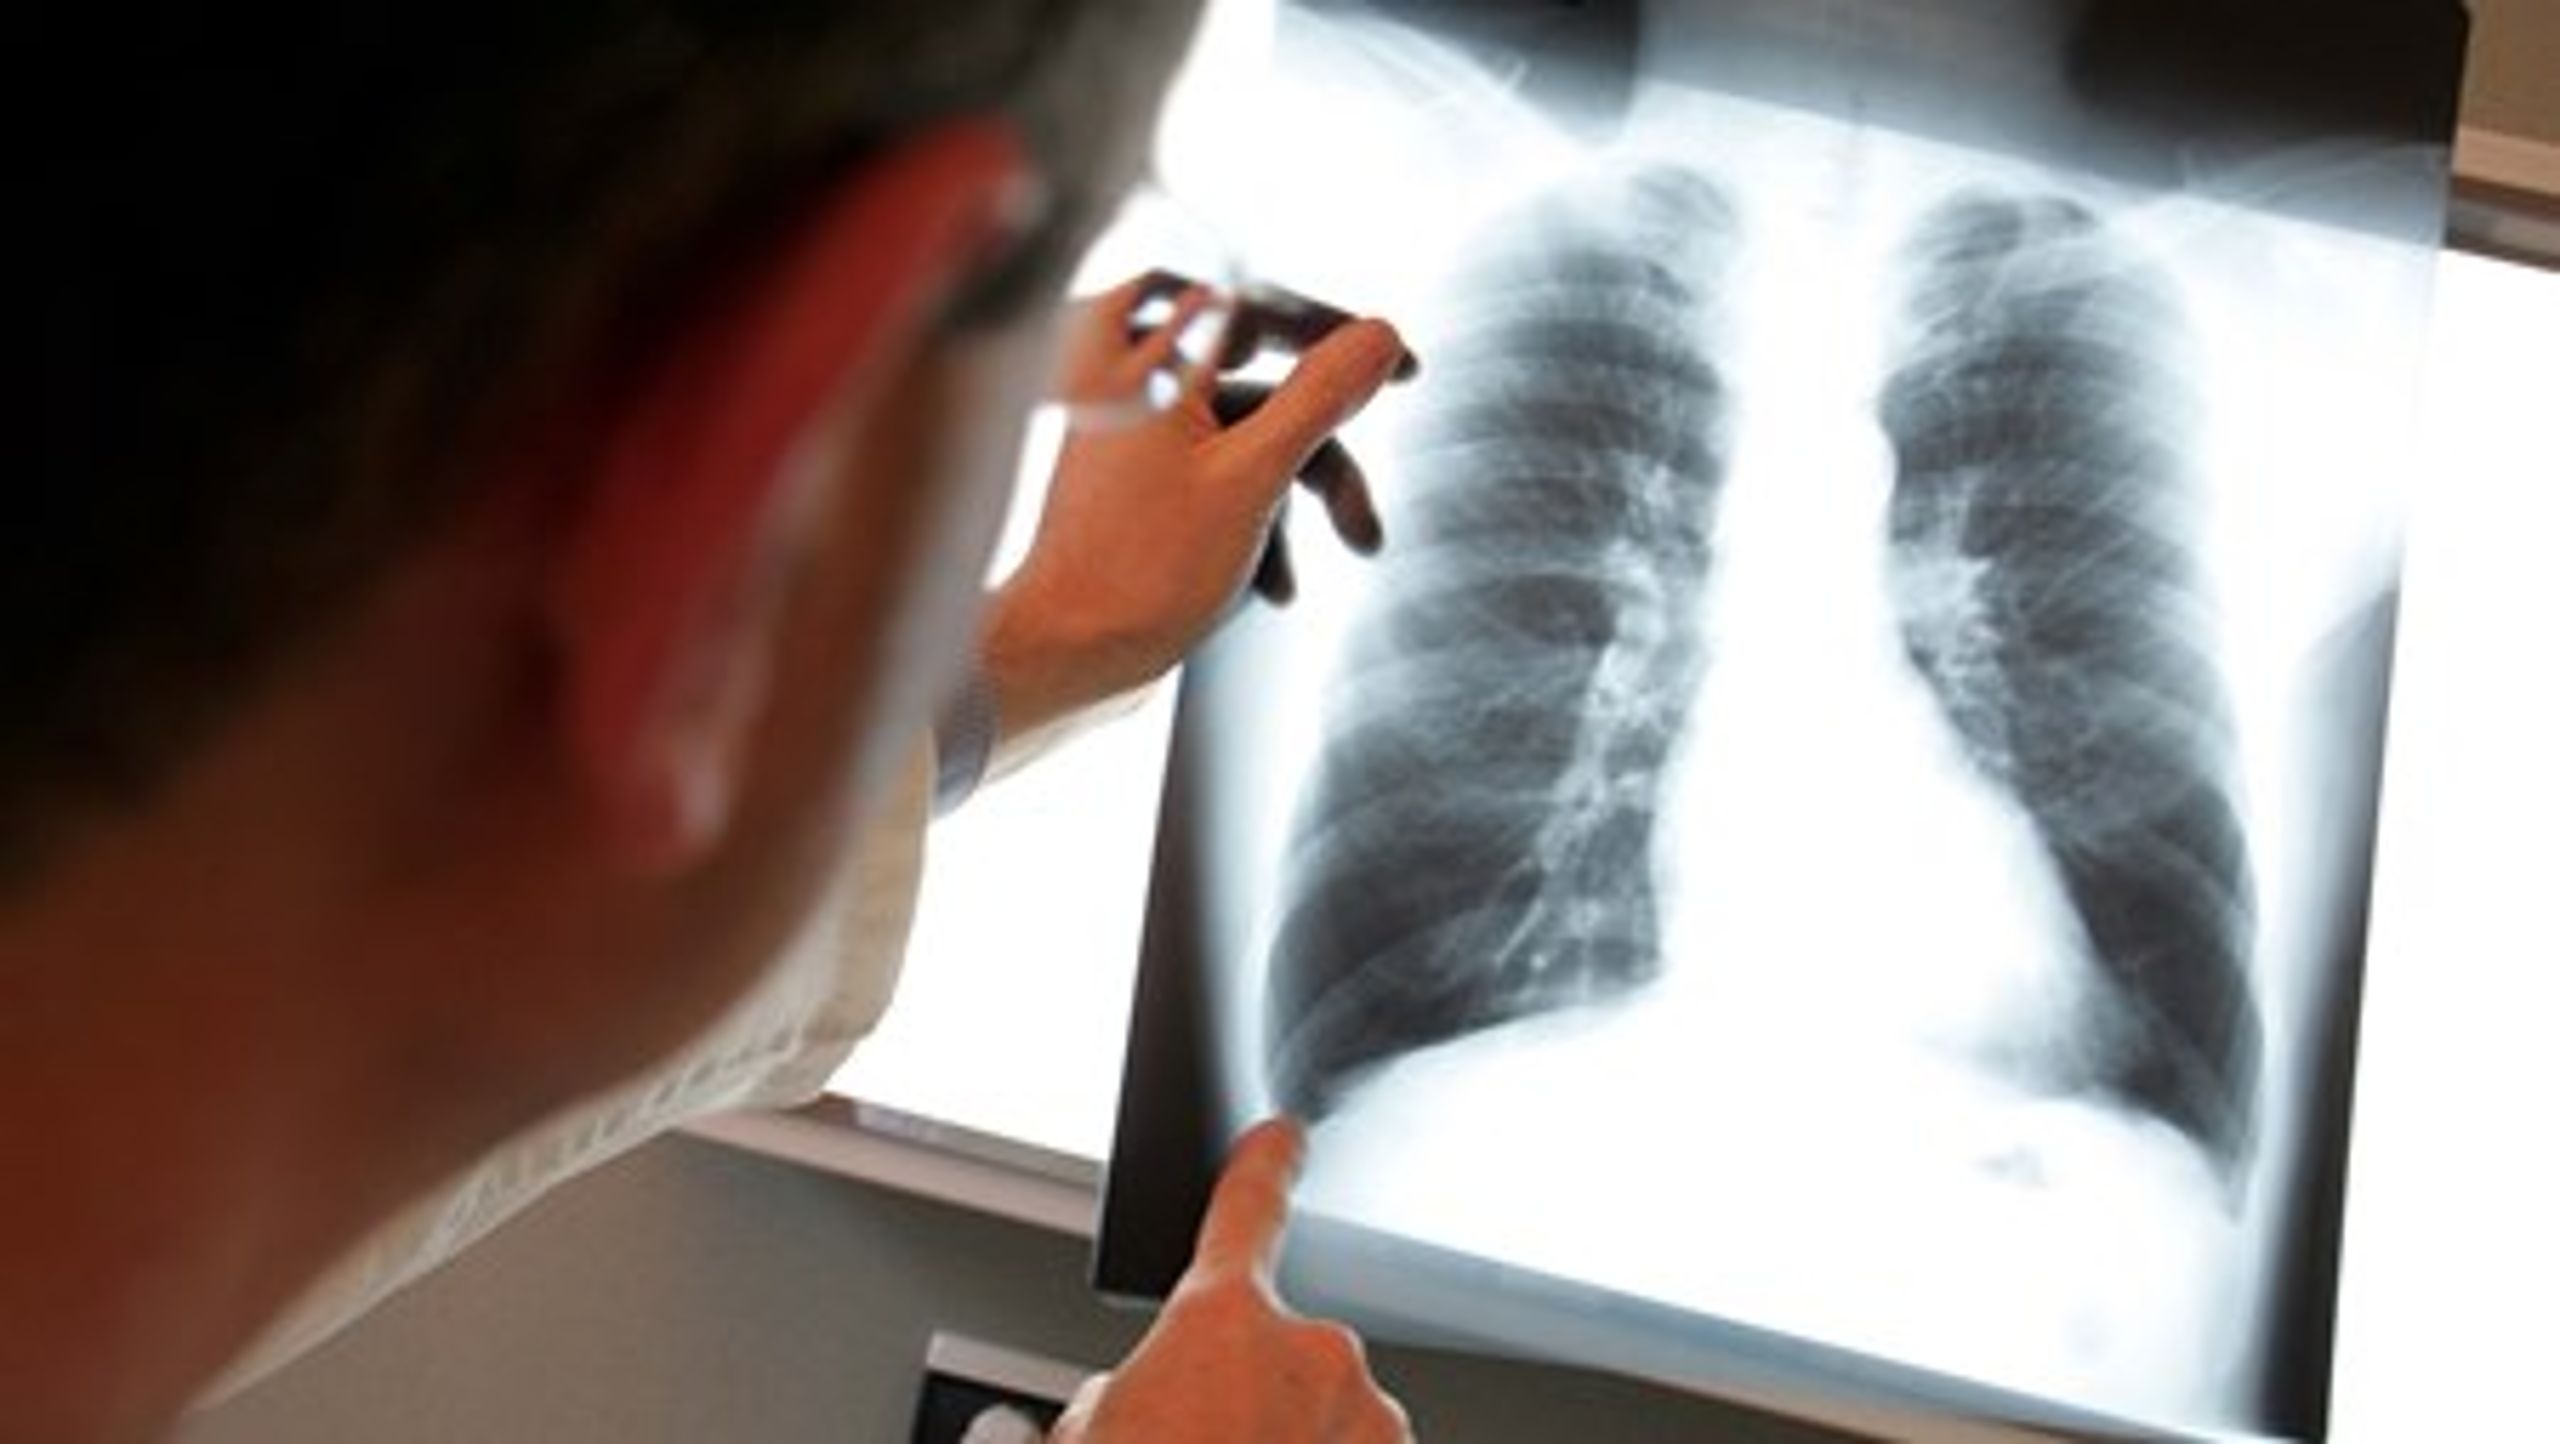 Nyeste tal fra Telecare Nord viser, at der er økonomiske fordele ved at behandle lungepatienter med telemedicin.